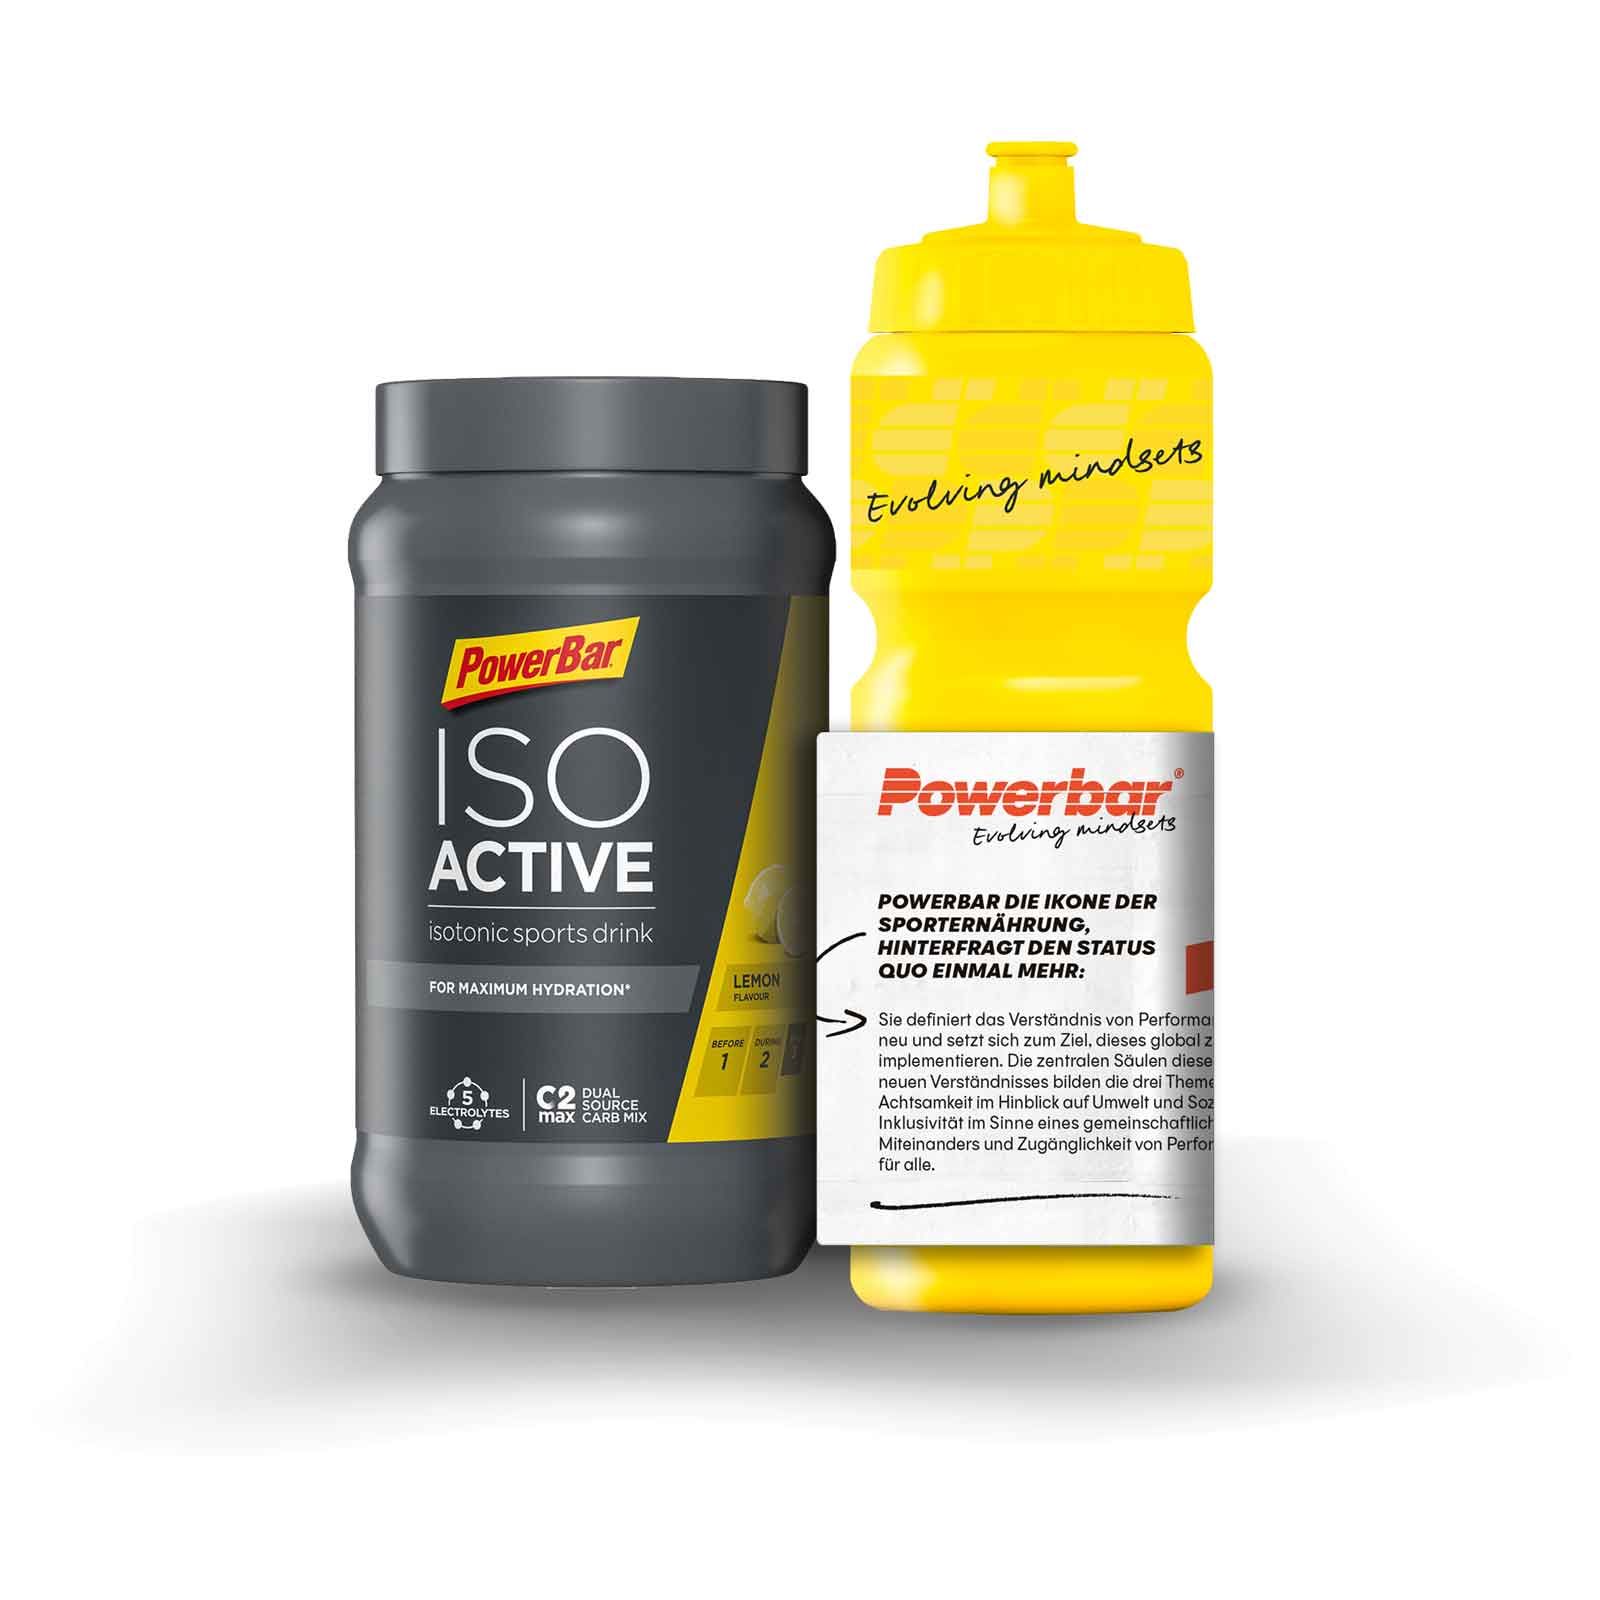 Bild von Powerbar IsoBottle OnPack - Isoactive Sports Drink 600g + Trinkflasche 750ml